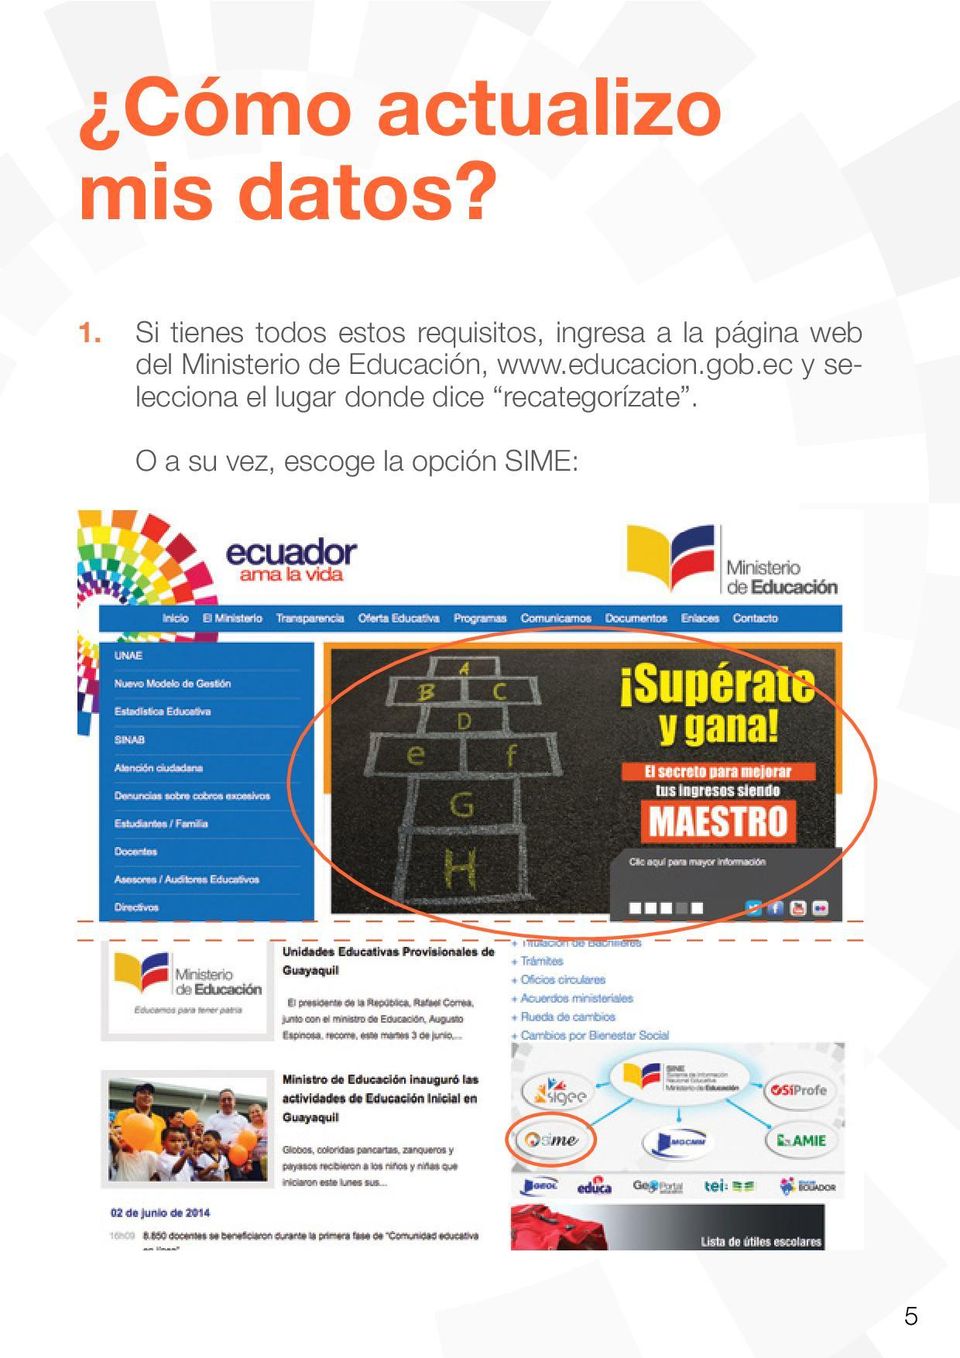 web del Ministerio de Educación, www.educacion.gob.